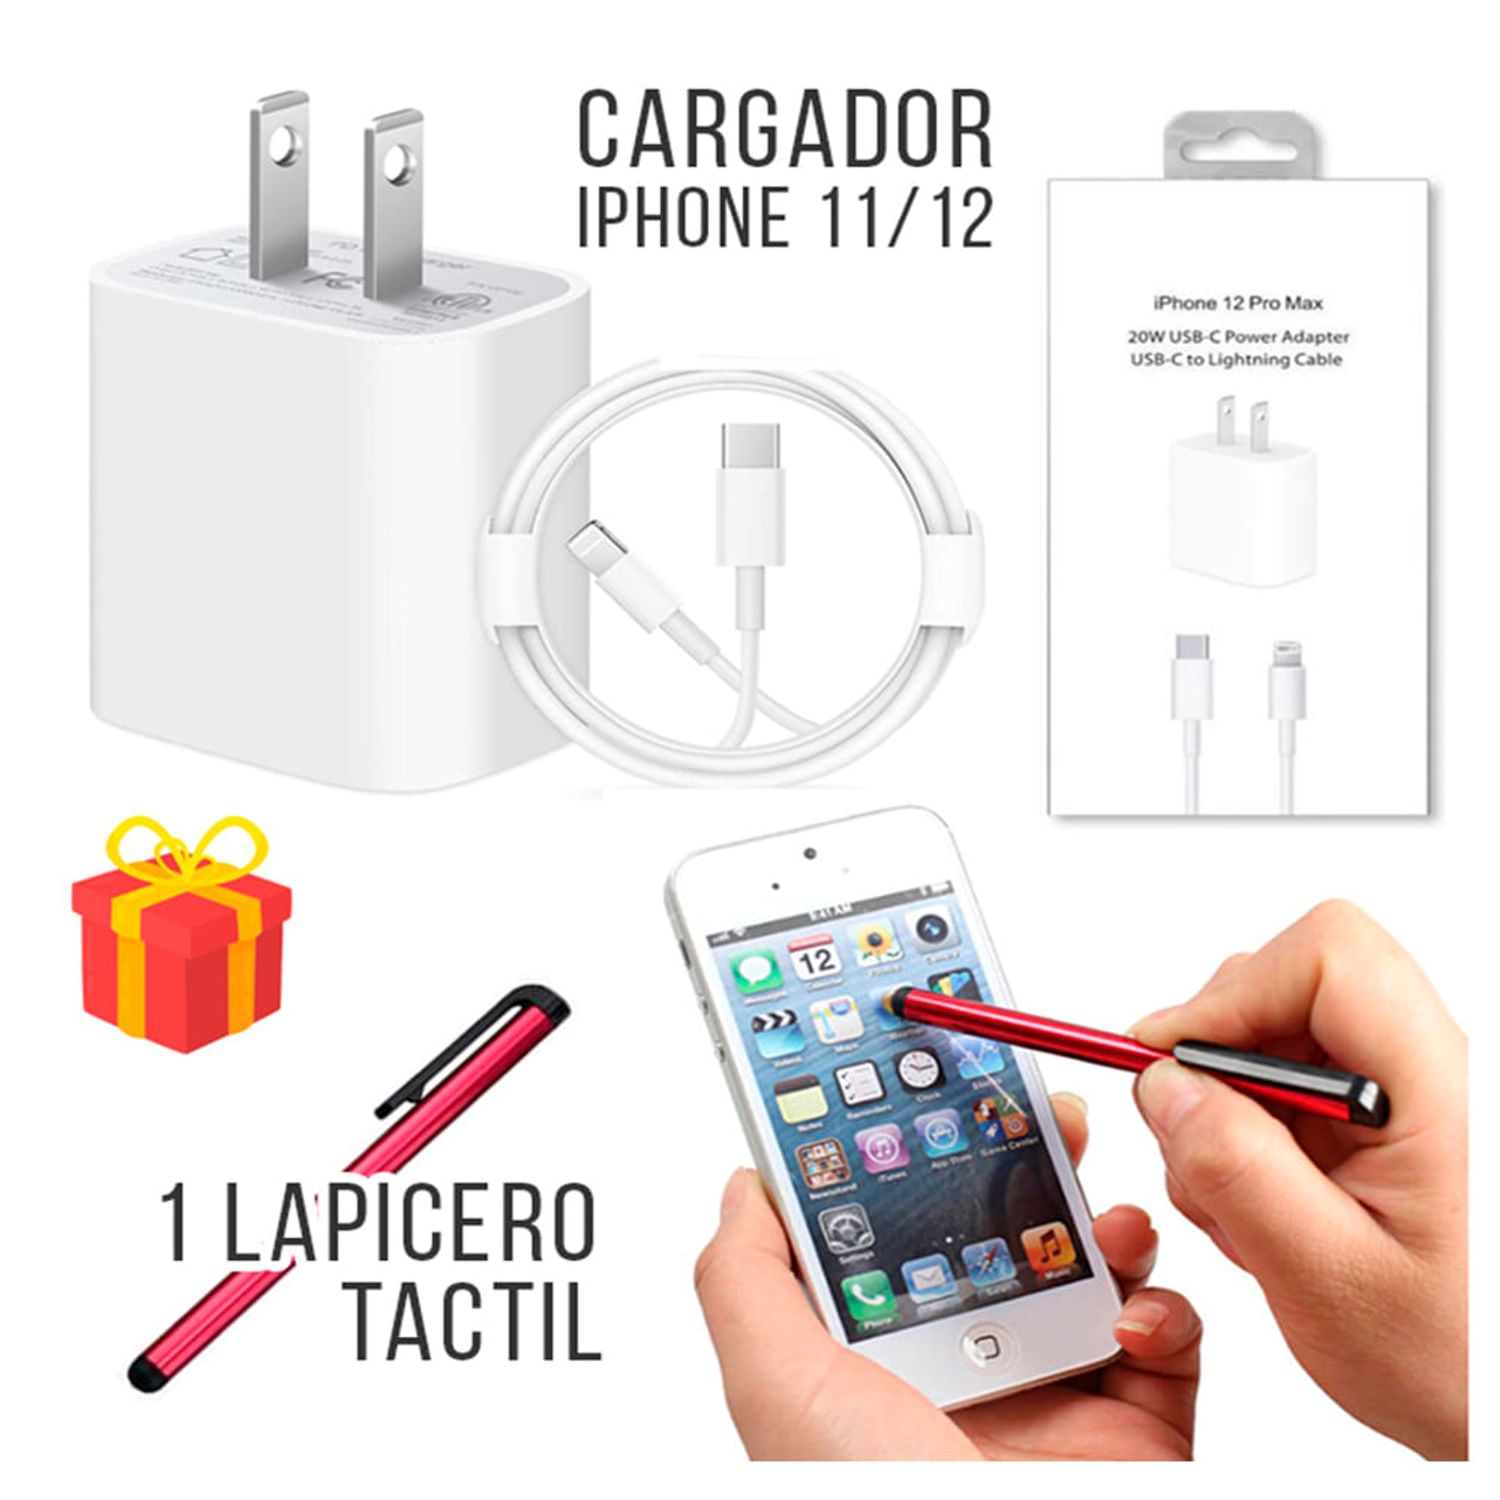 iPhone 15: ¿cuánto cuestan el cargador y el cable de alta velocidad que  Apple no incluye en la caja?, Smartphone